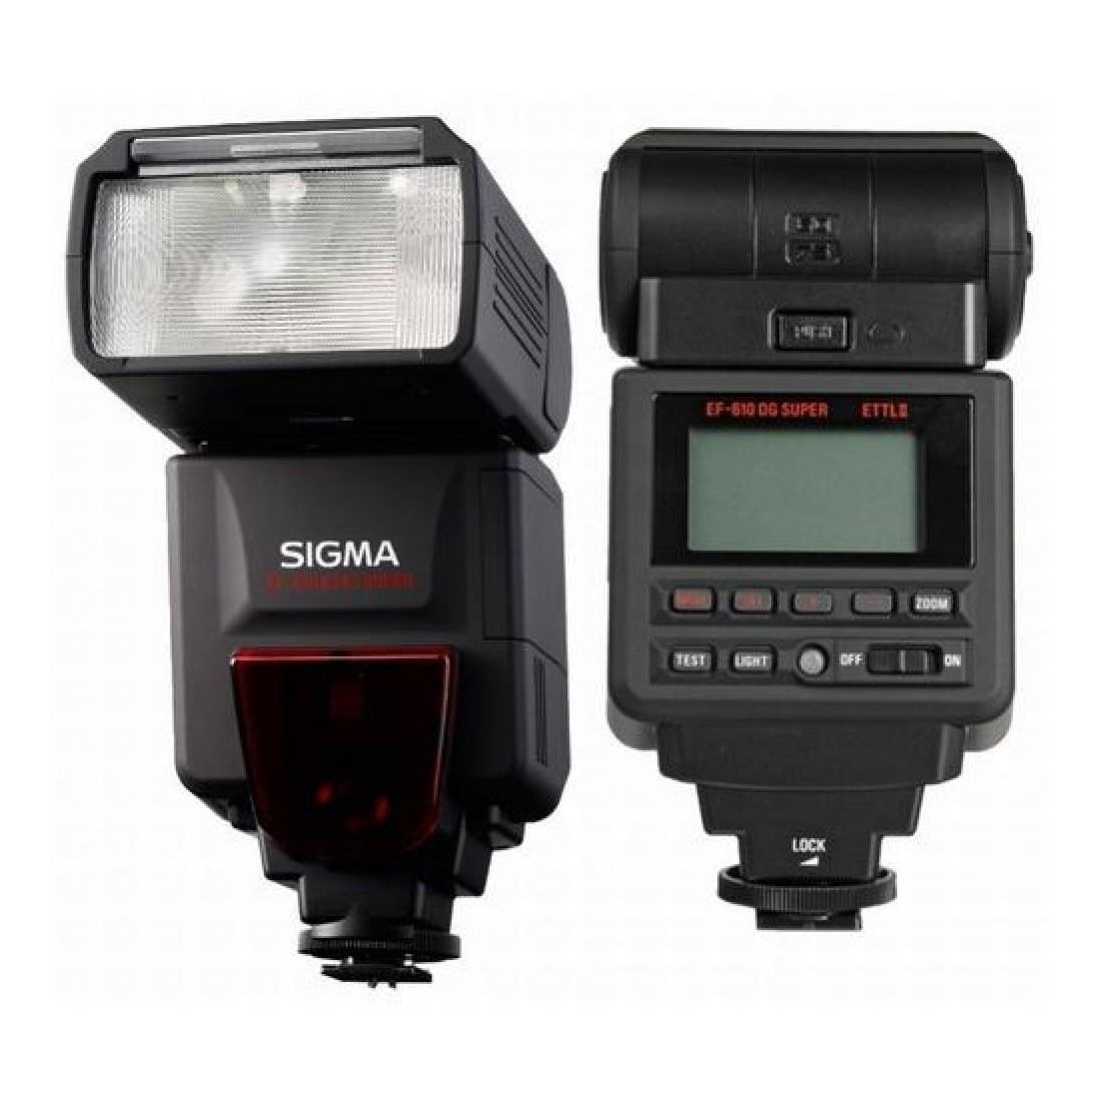 Sigma ef 610 dg super for canon - купить , скидки, цена, отзывы, обзор, характеристики - вспышки для фотоаппаратов